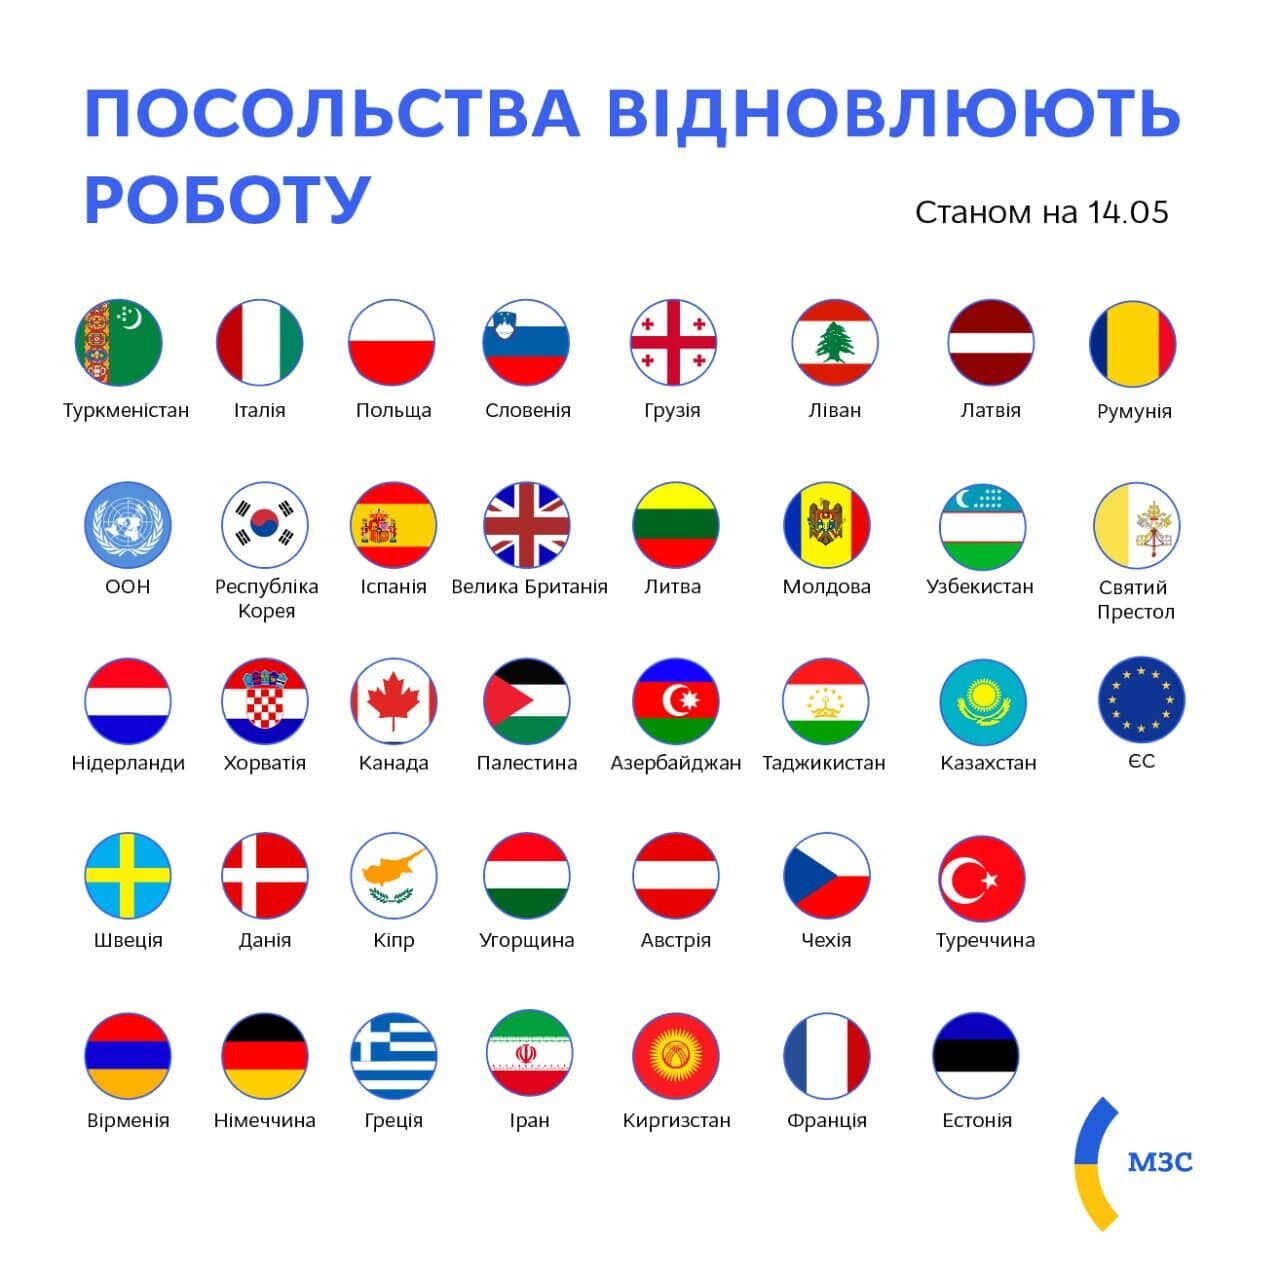 Список посольств в столице Украины.